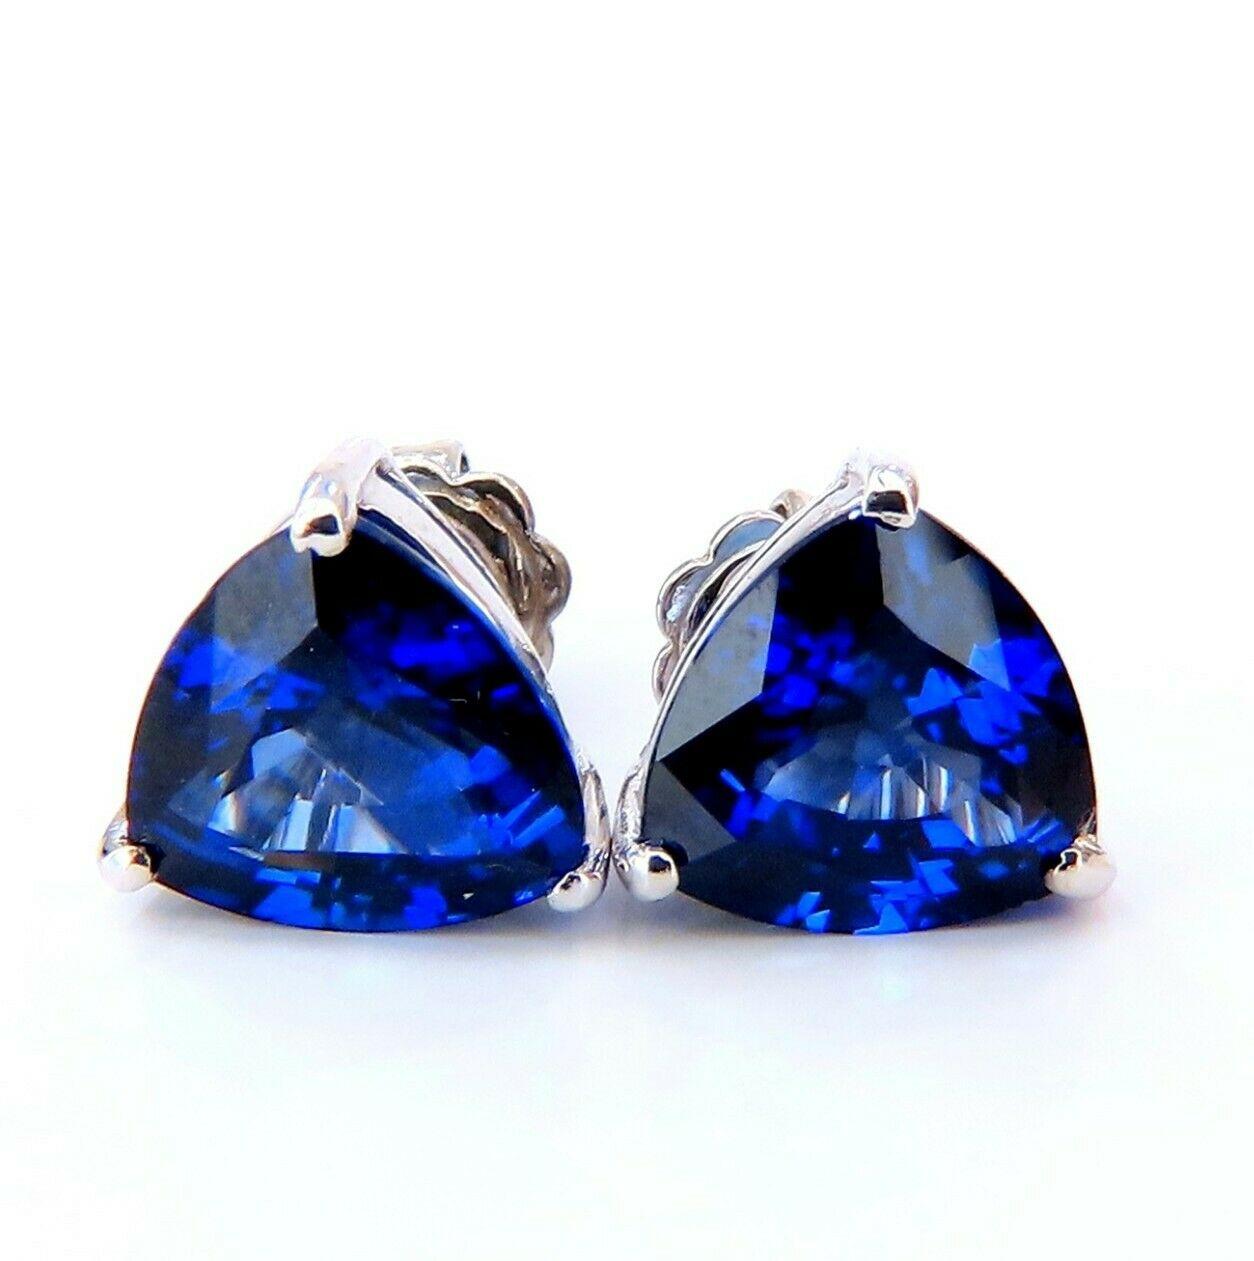 Boucles d'oreilles triangulaires bleu royal

9,11 carats de saphirs de taille brillant créés en laboratoire.

Bleu royal, limpide et transparent.

10,7 x 9,2 mm chacun.

Profondeur des boucles d'oreilles : 6,5 mm

Or blanc 14kt 4,4 grammes.